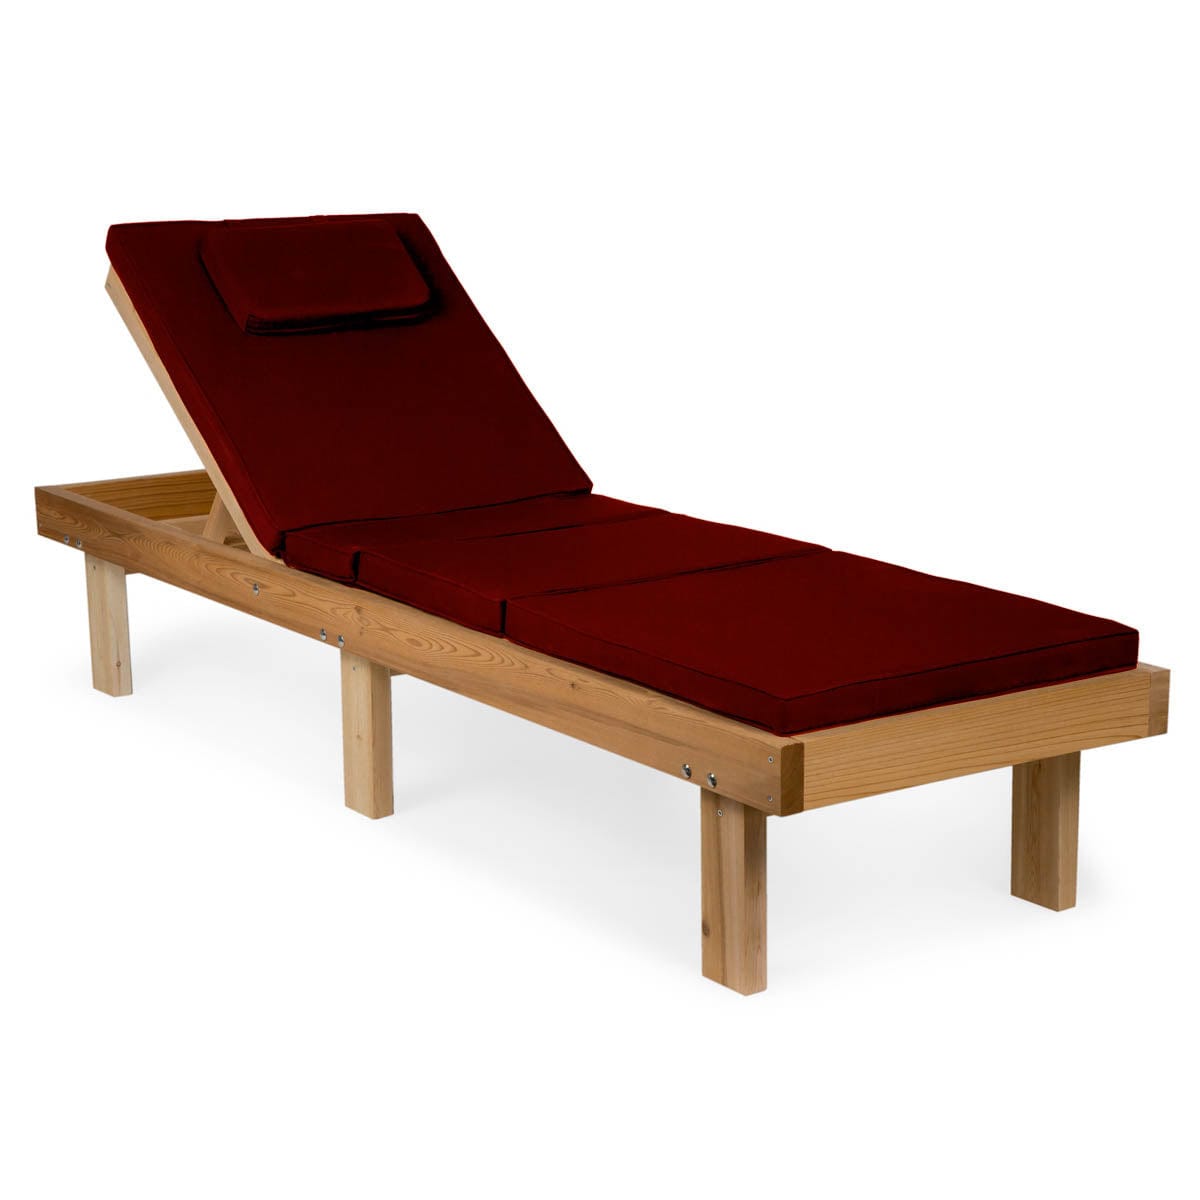 Cedar Chaise Lounger with Red Cushion CL78-R - Molaix - Molaix842088009366ChaisesCL78-R